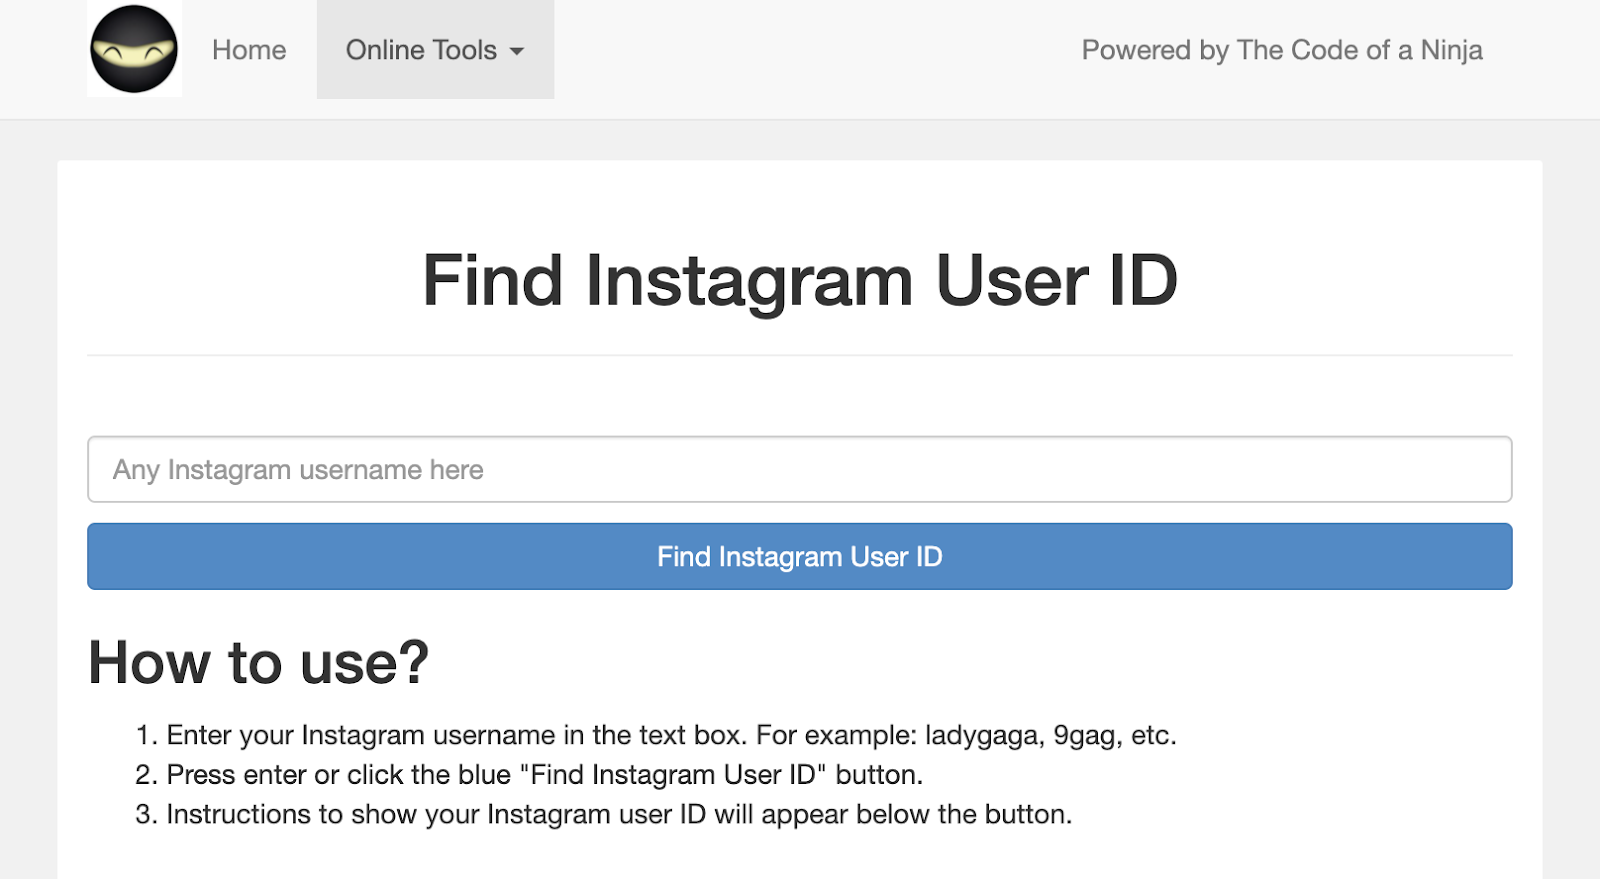 Код ниндзя для поиска идентификатора пользователя Instagram